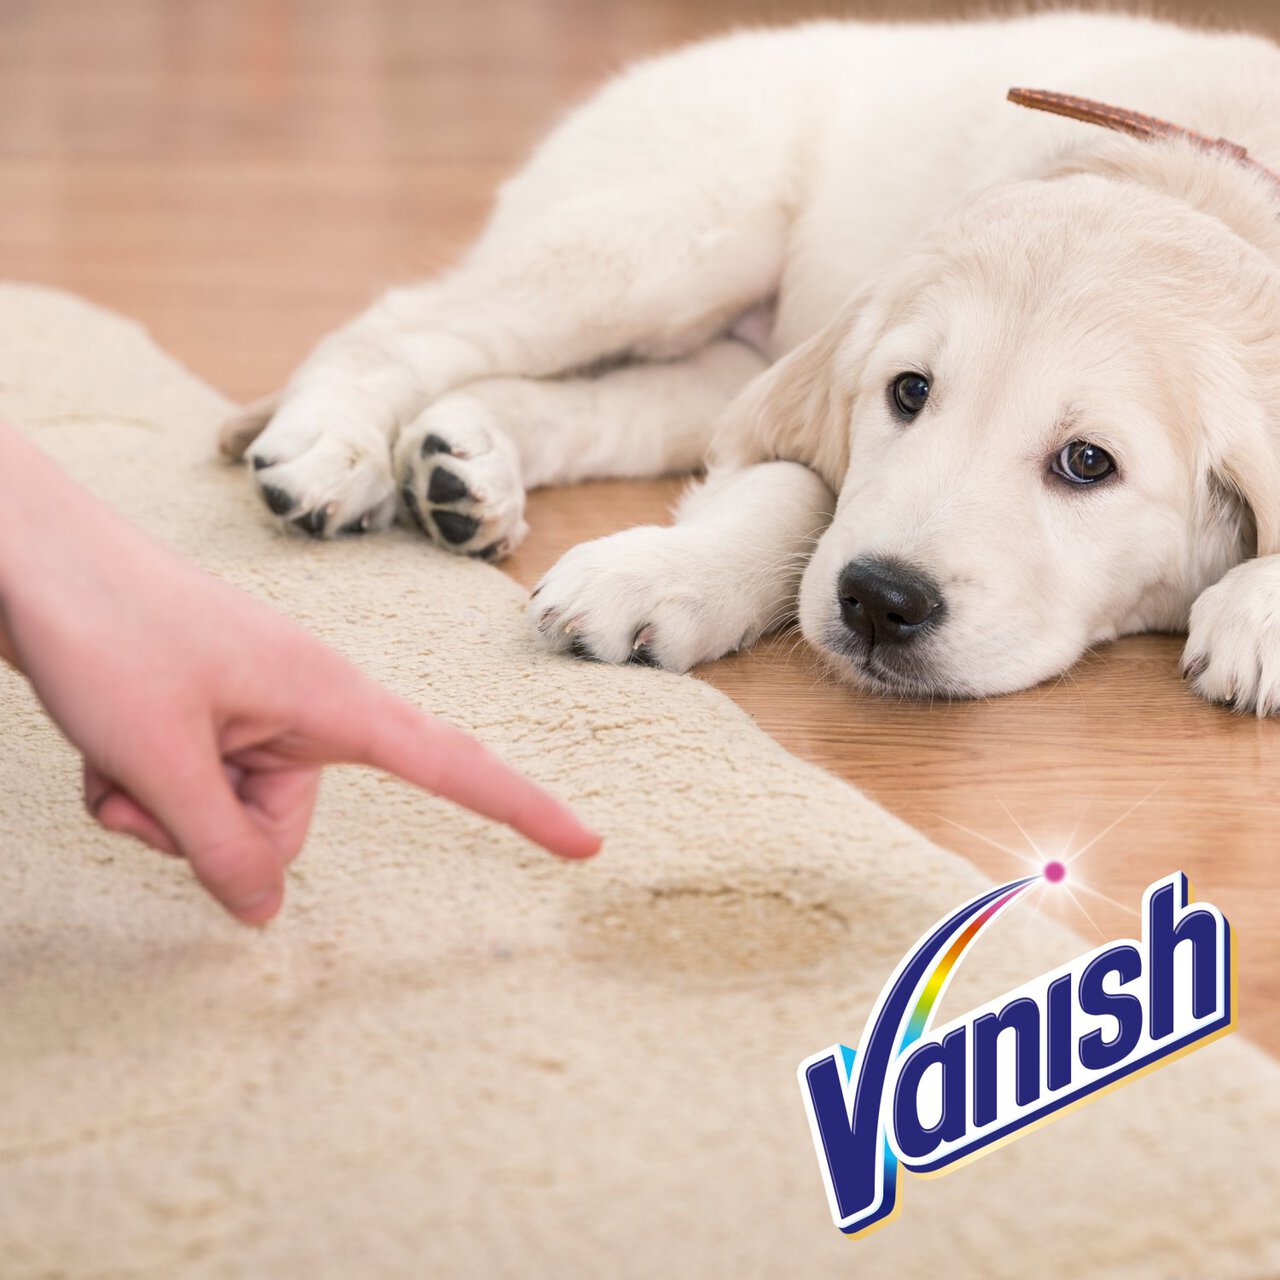 Vanish OxiAction Urine Destroyer Pet Expert 500ml